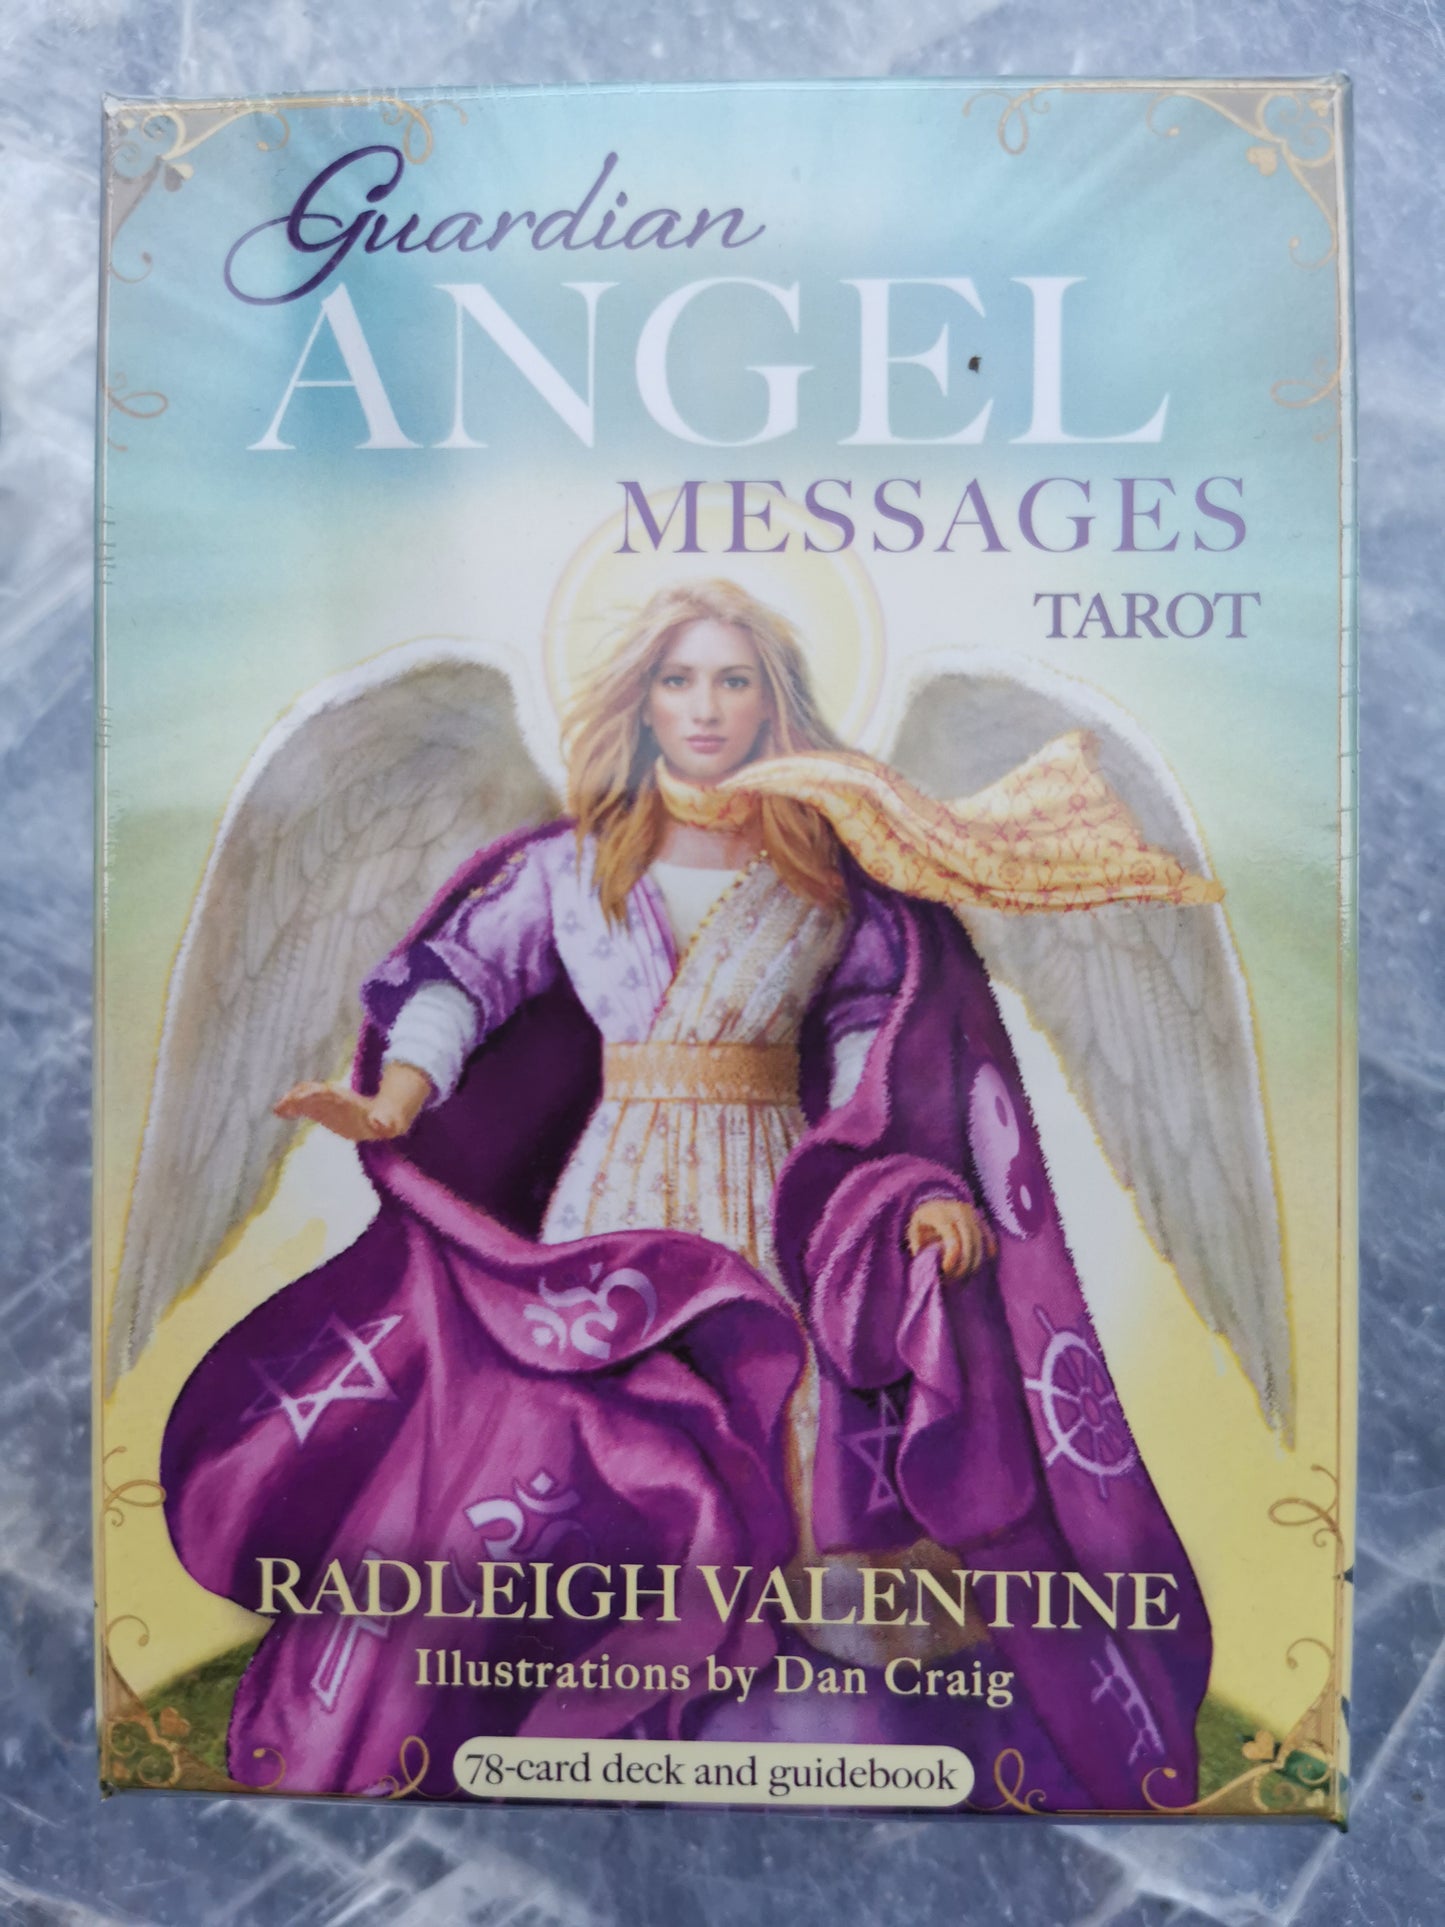 Angel messages tarot